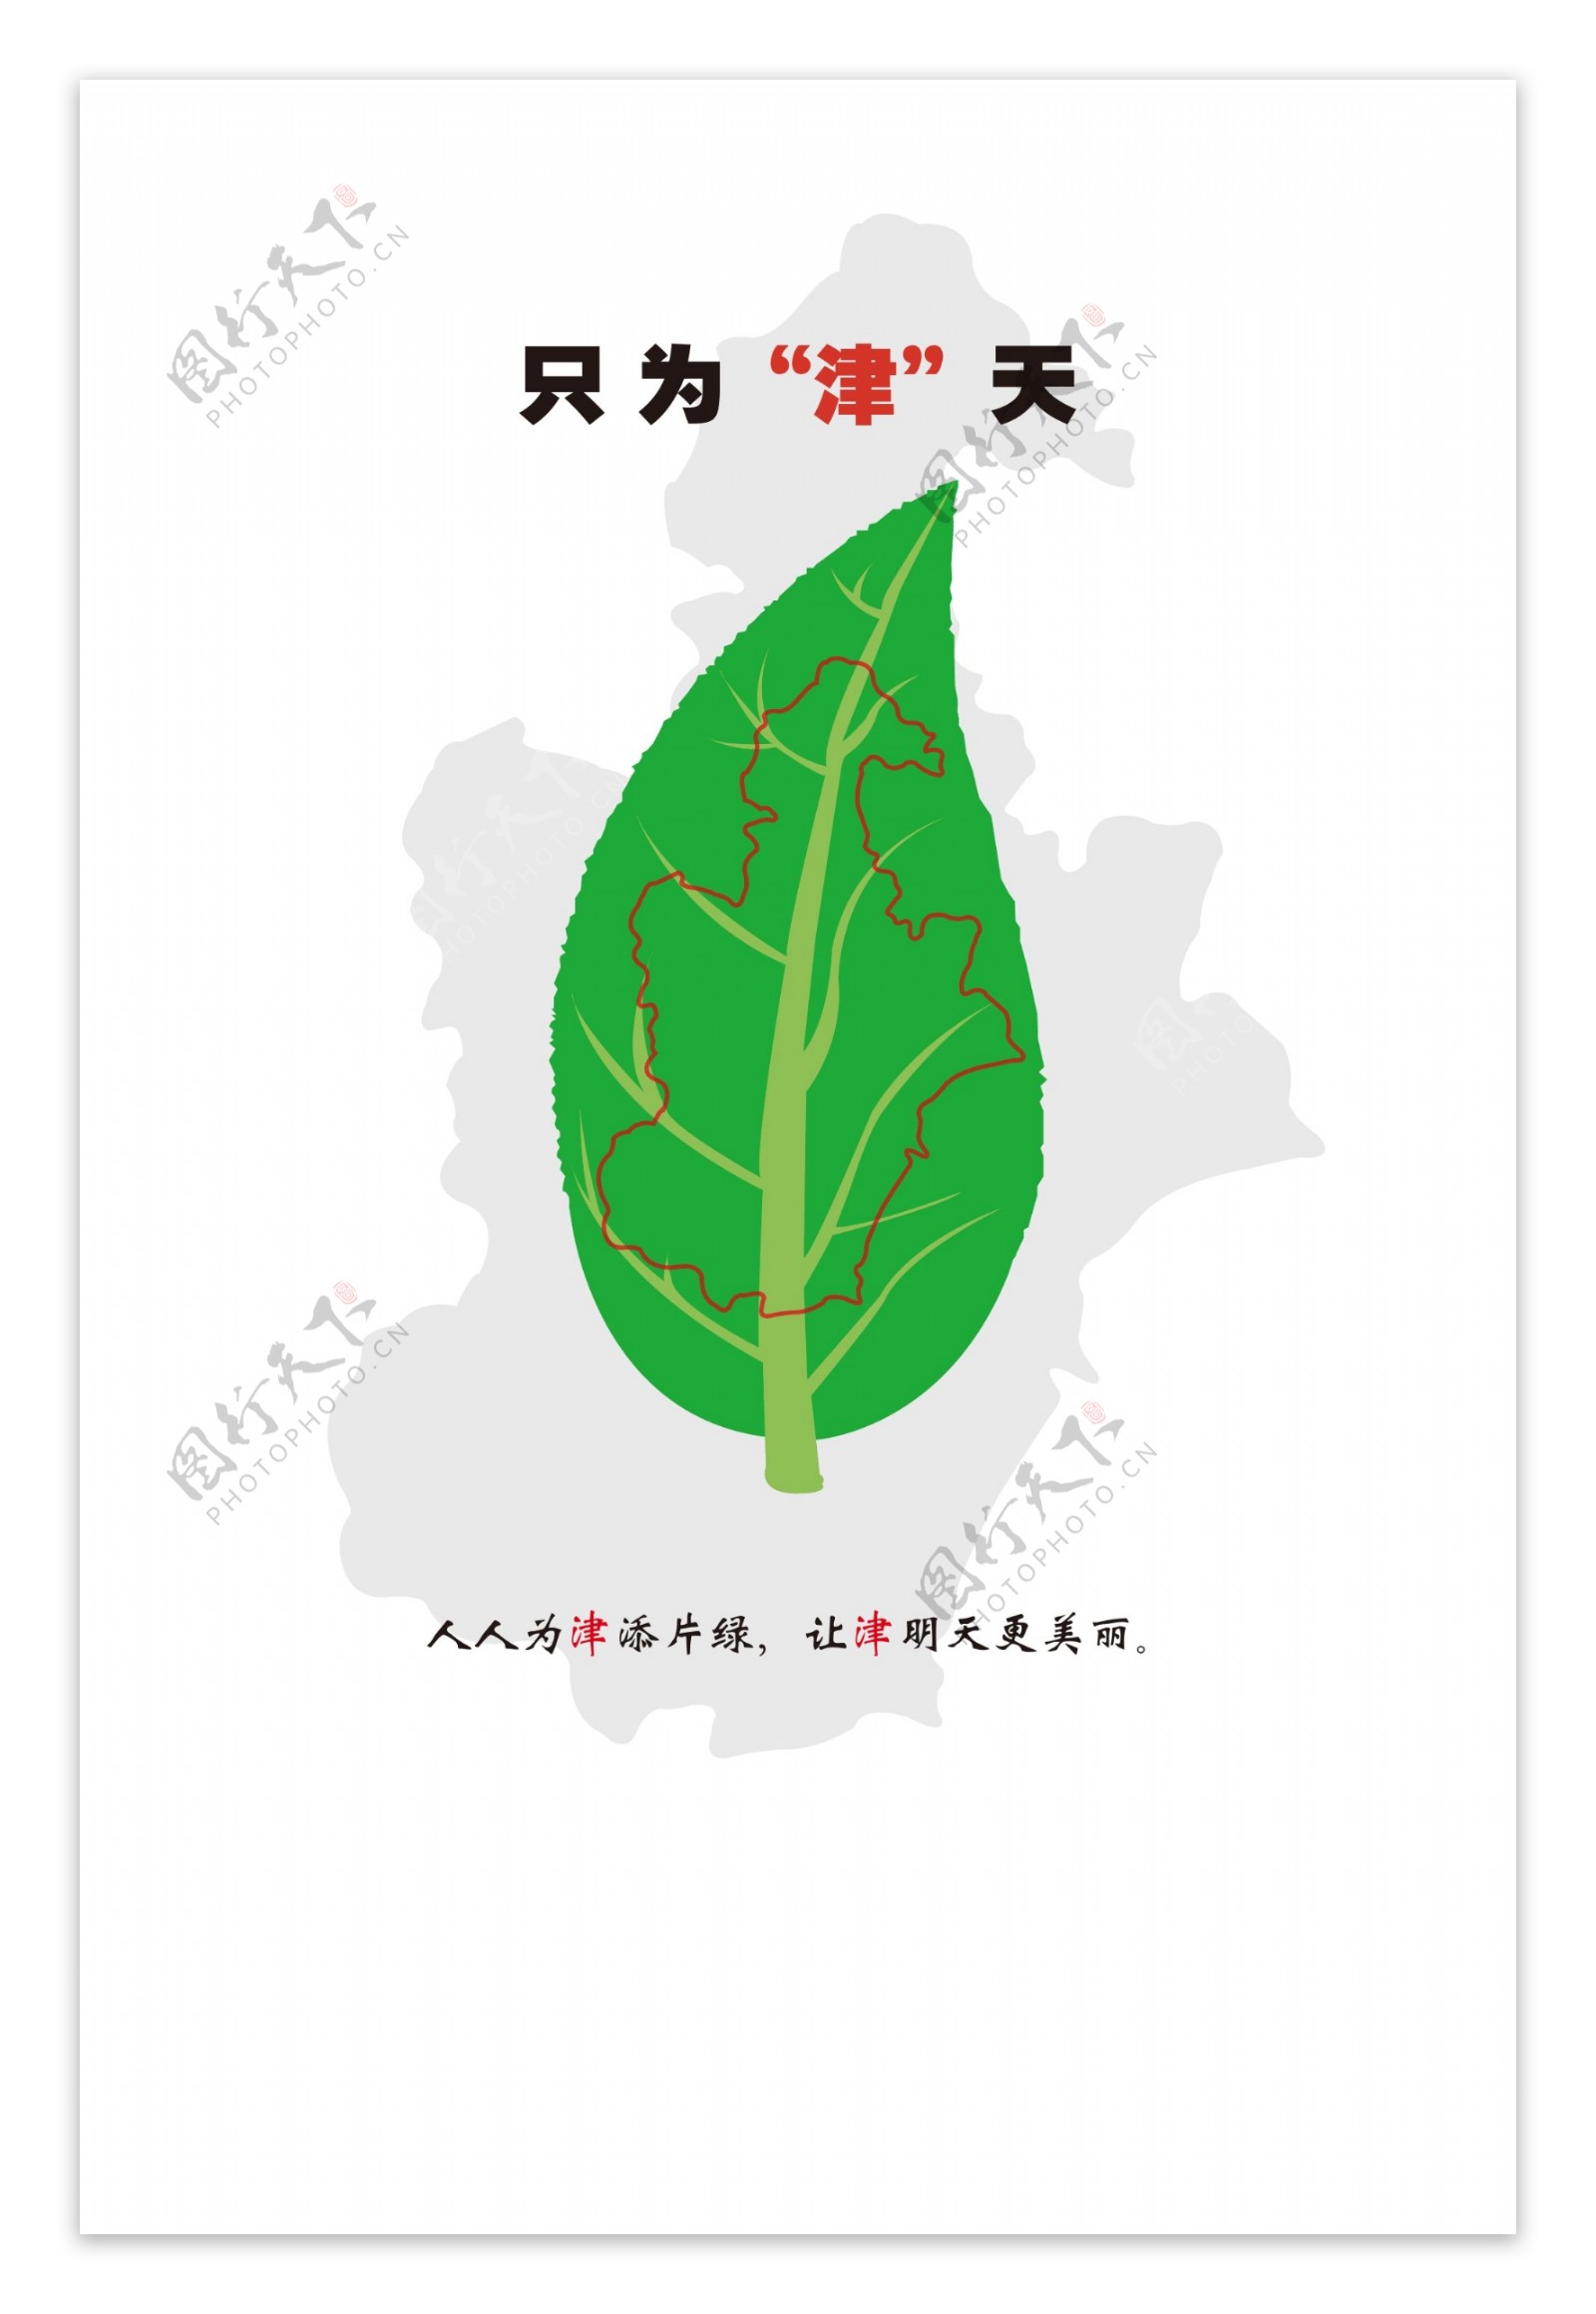 简约环保绿色宣传海报设计